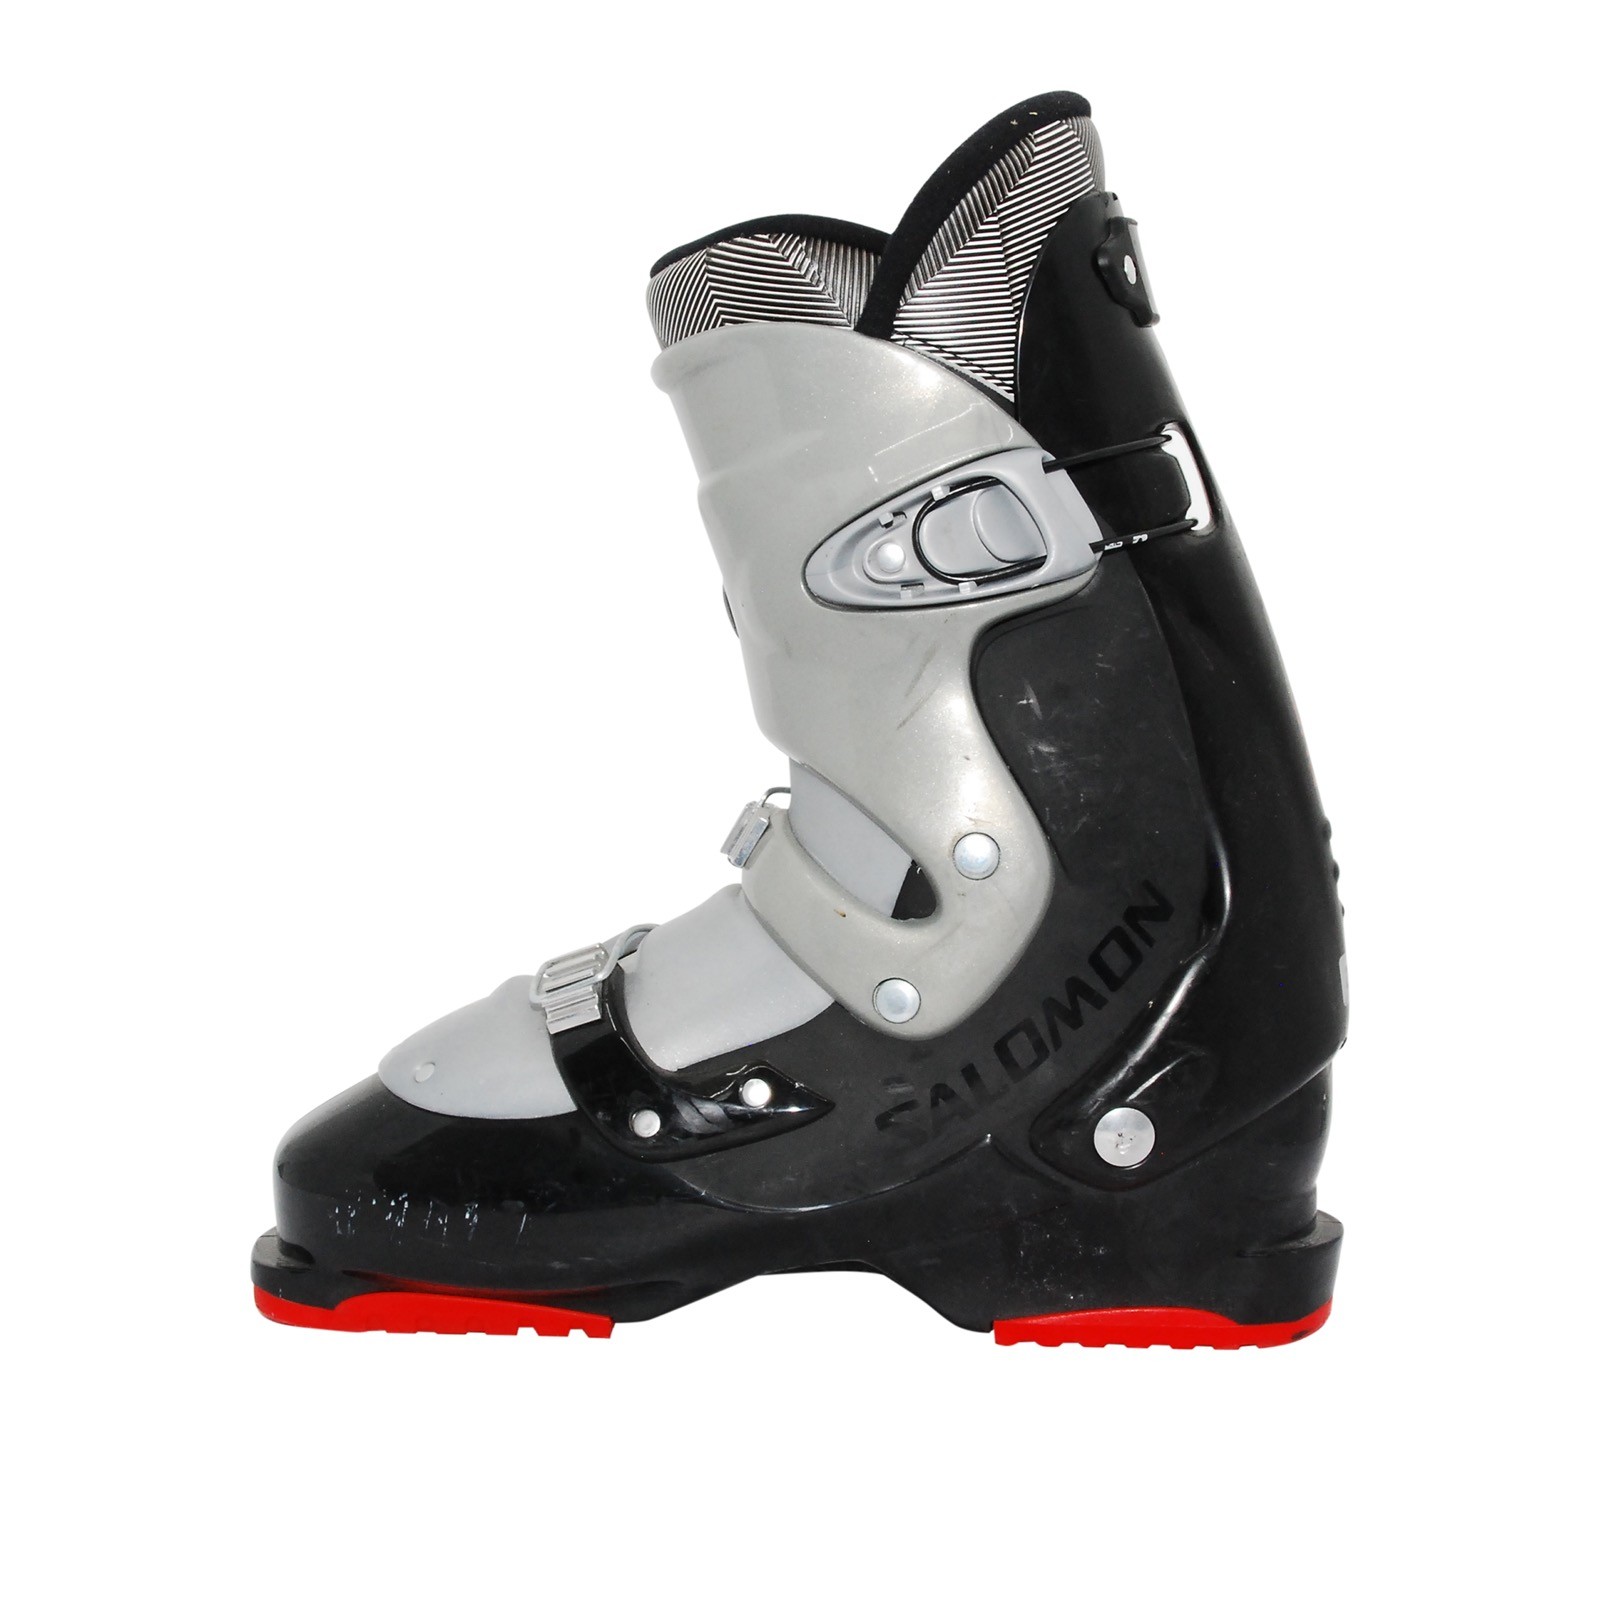 Chaussure de ski occasion adulte Salomon symbio 38/24.5MP Qualité A 